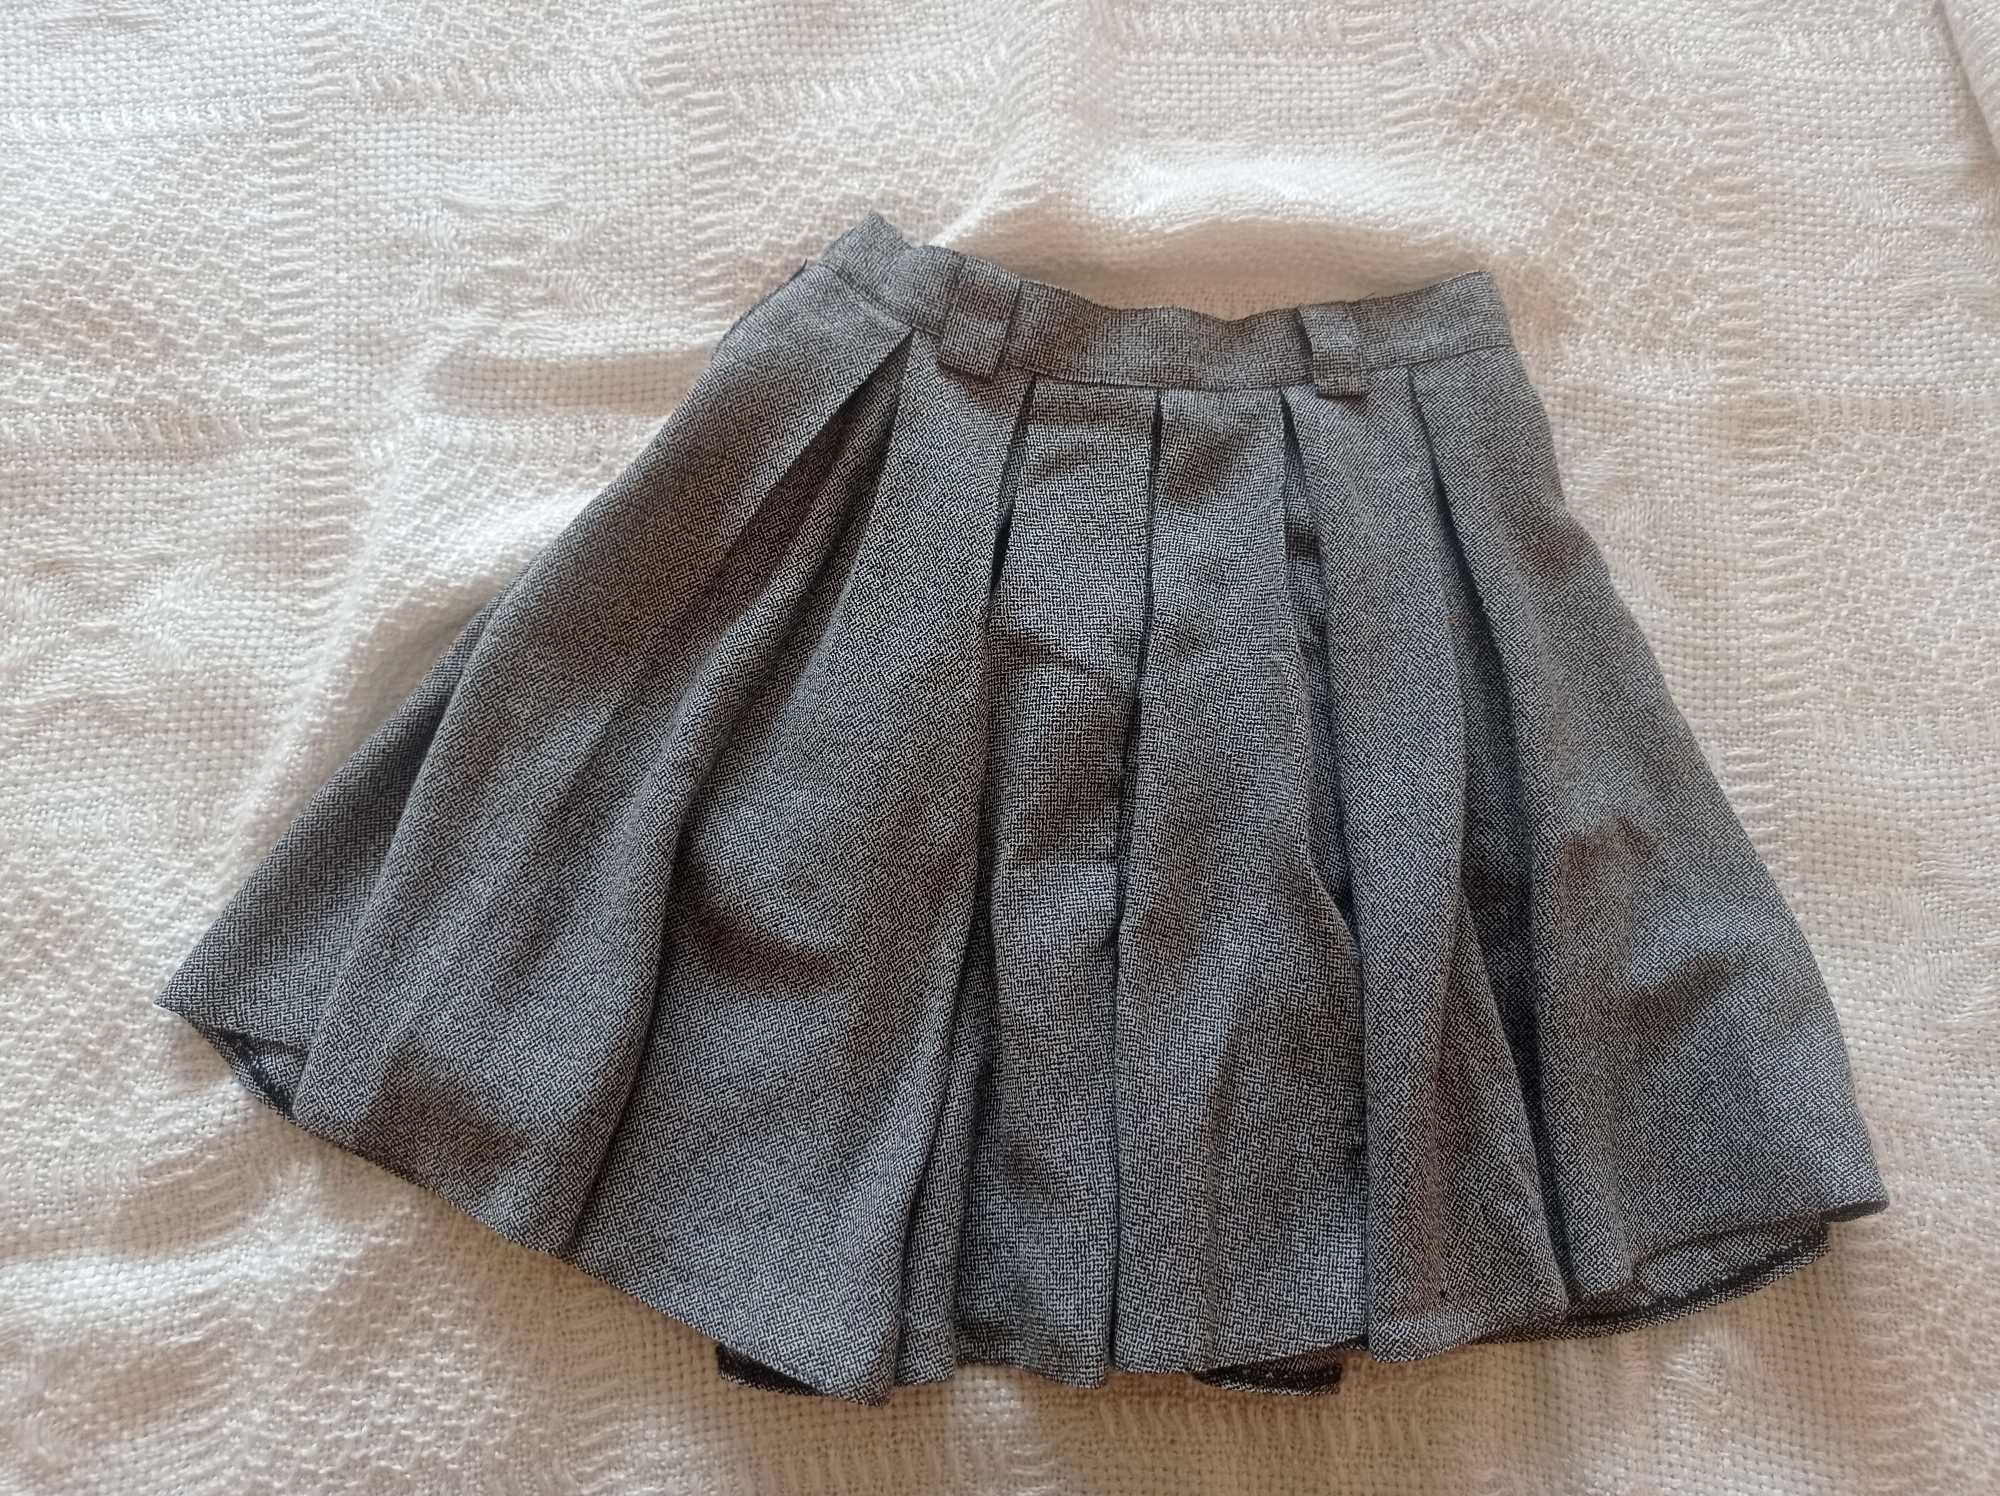 szara spódniczka plisowana tennis skirt